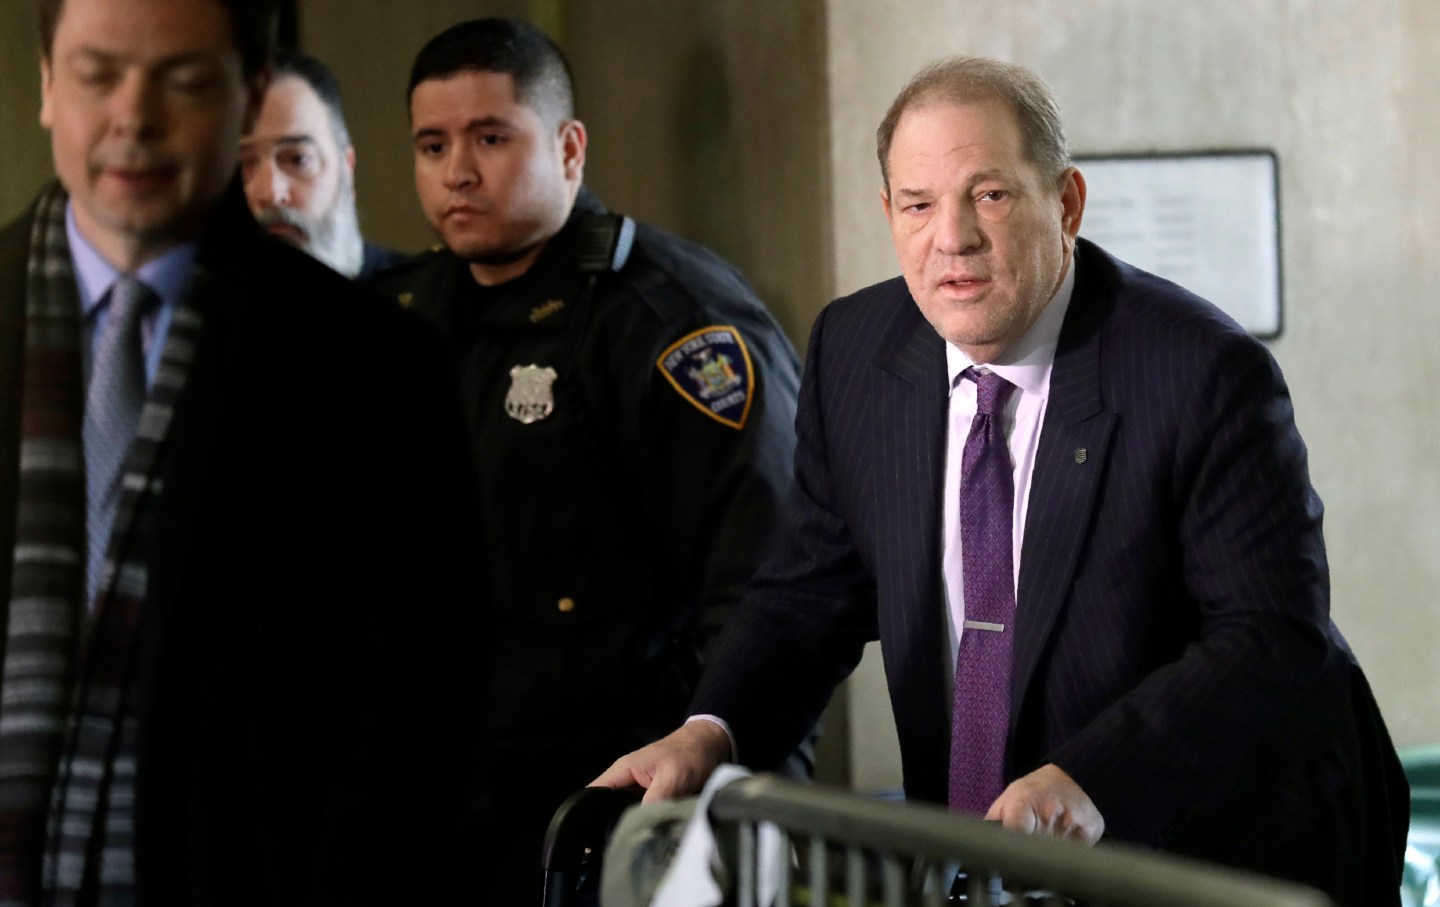 Harvey Weinstein arrives at trial